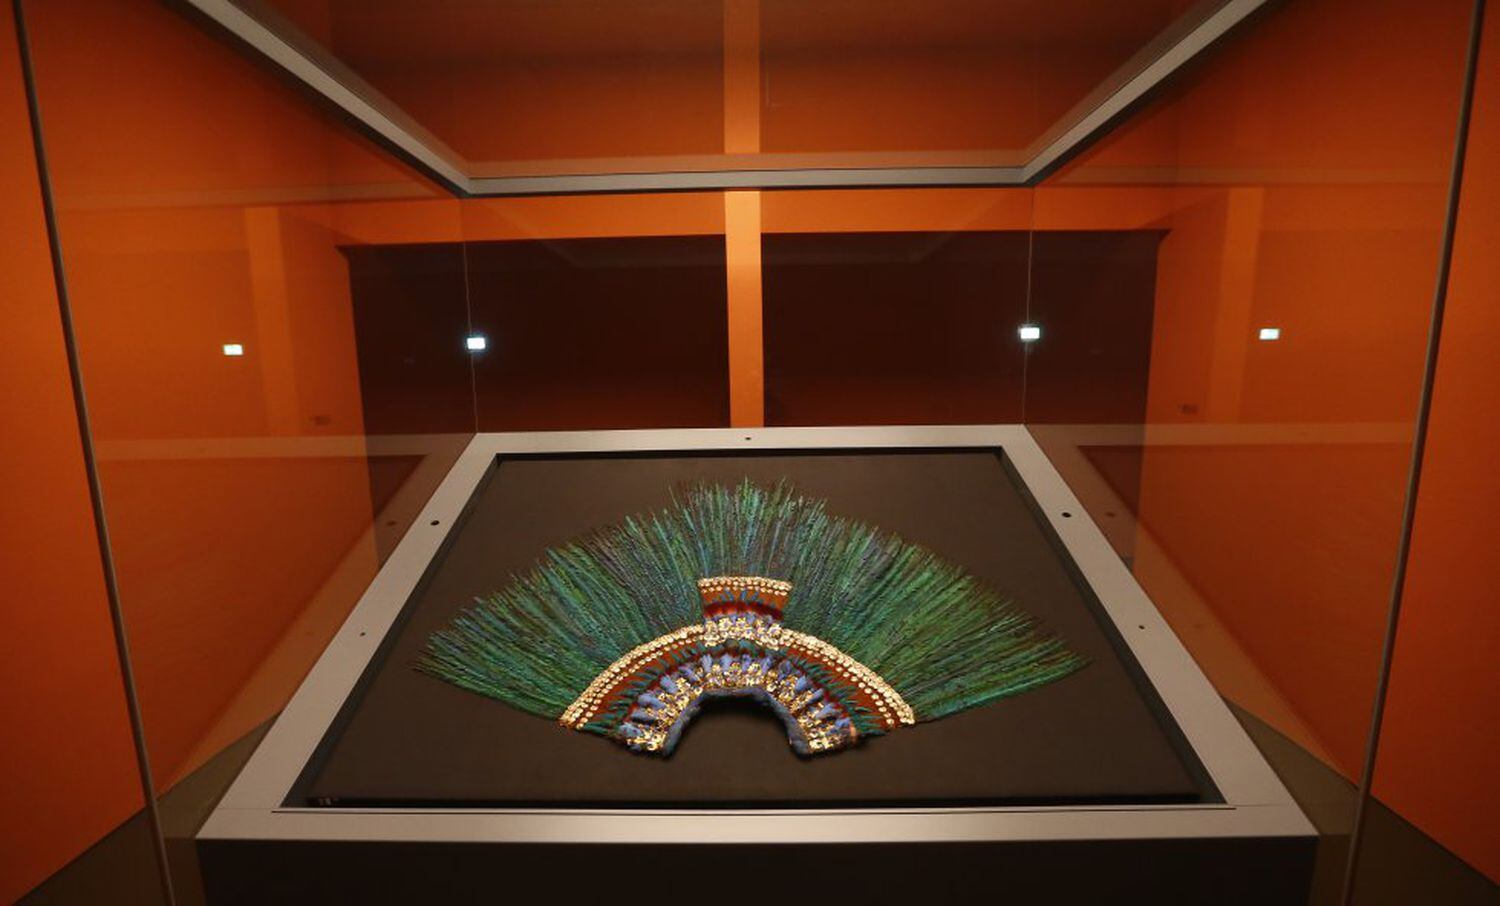 O penacho de Moctezuma, exposto no Museu Etnográfico de Viena, em uma imagem de arquivo.